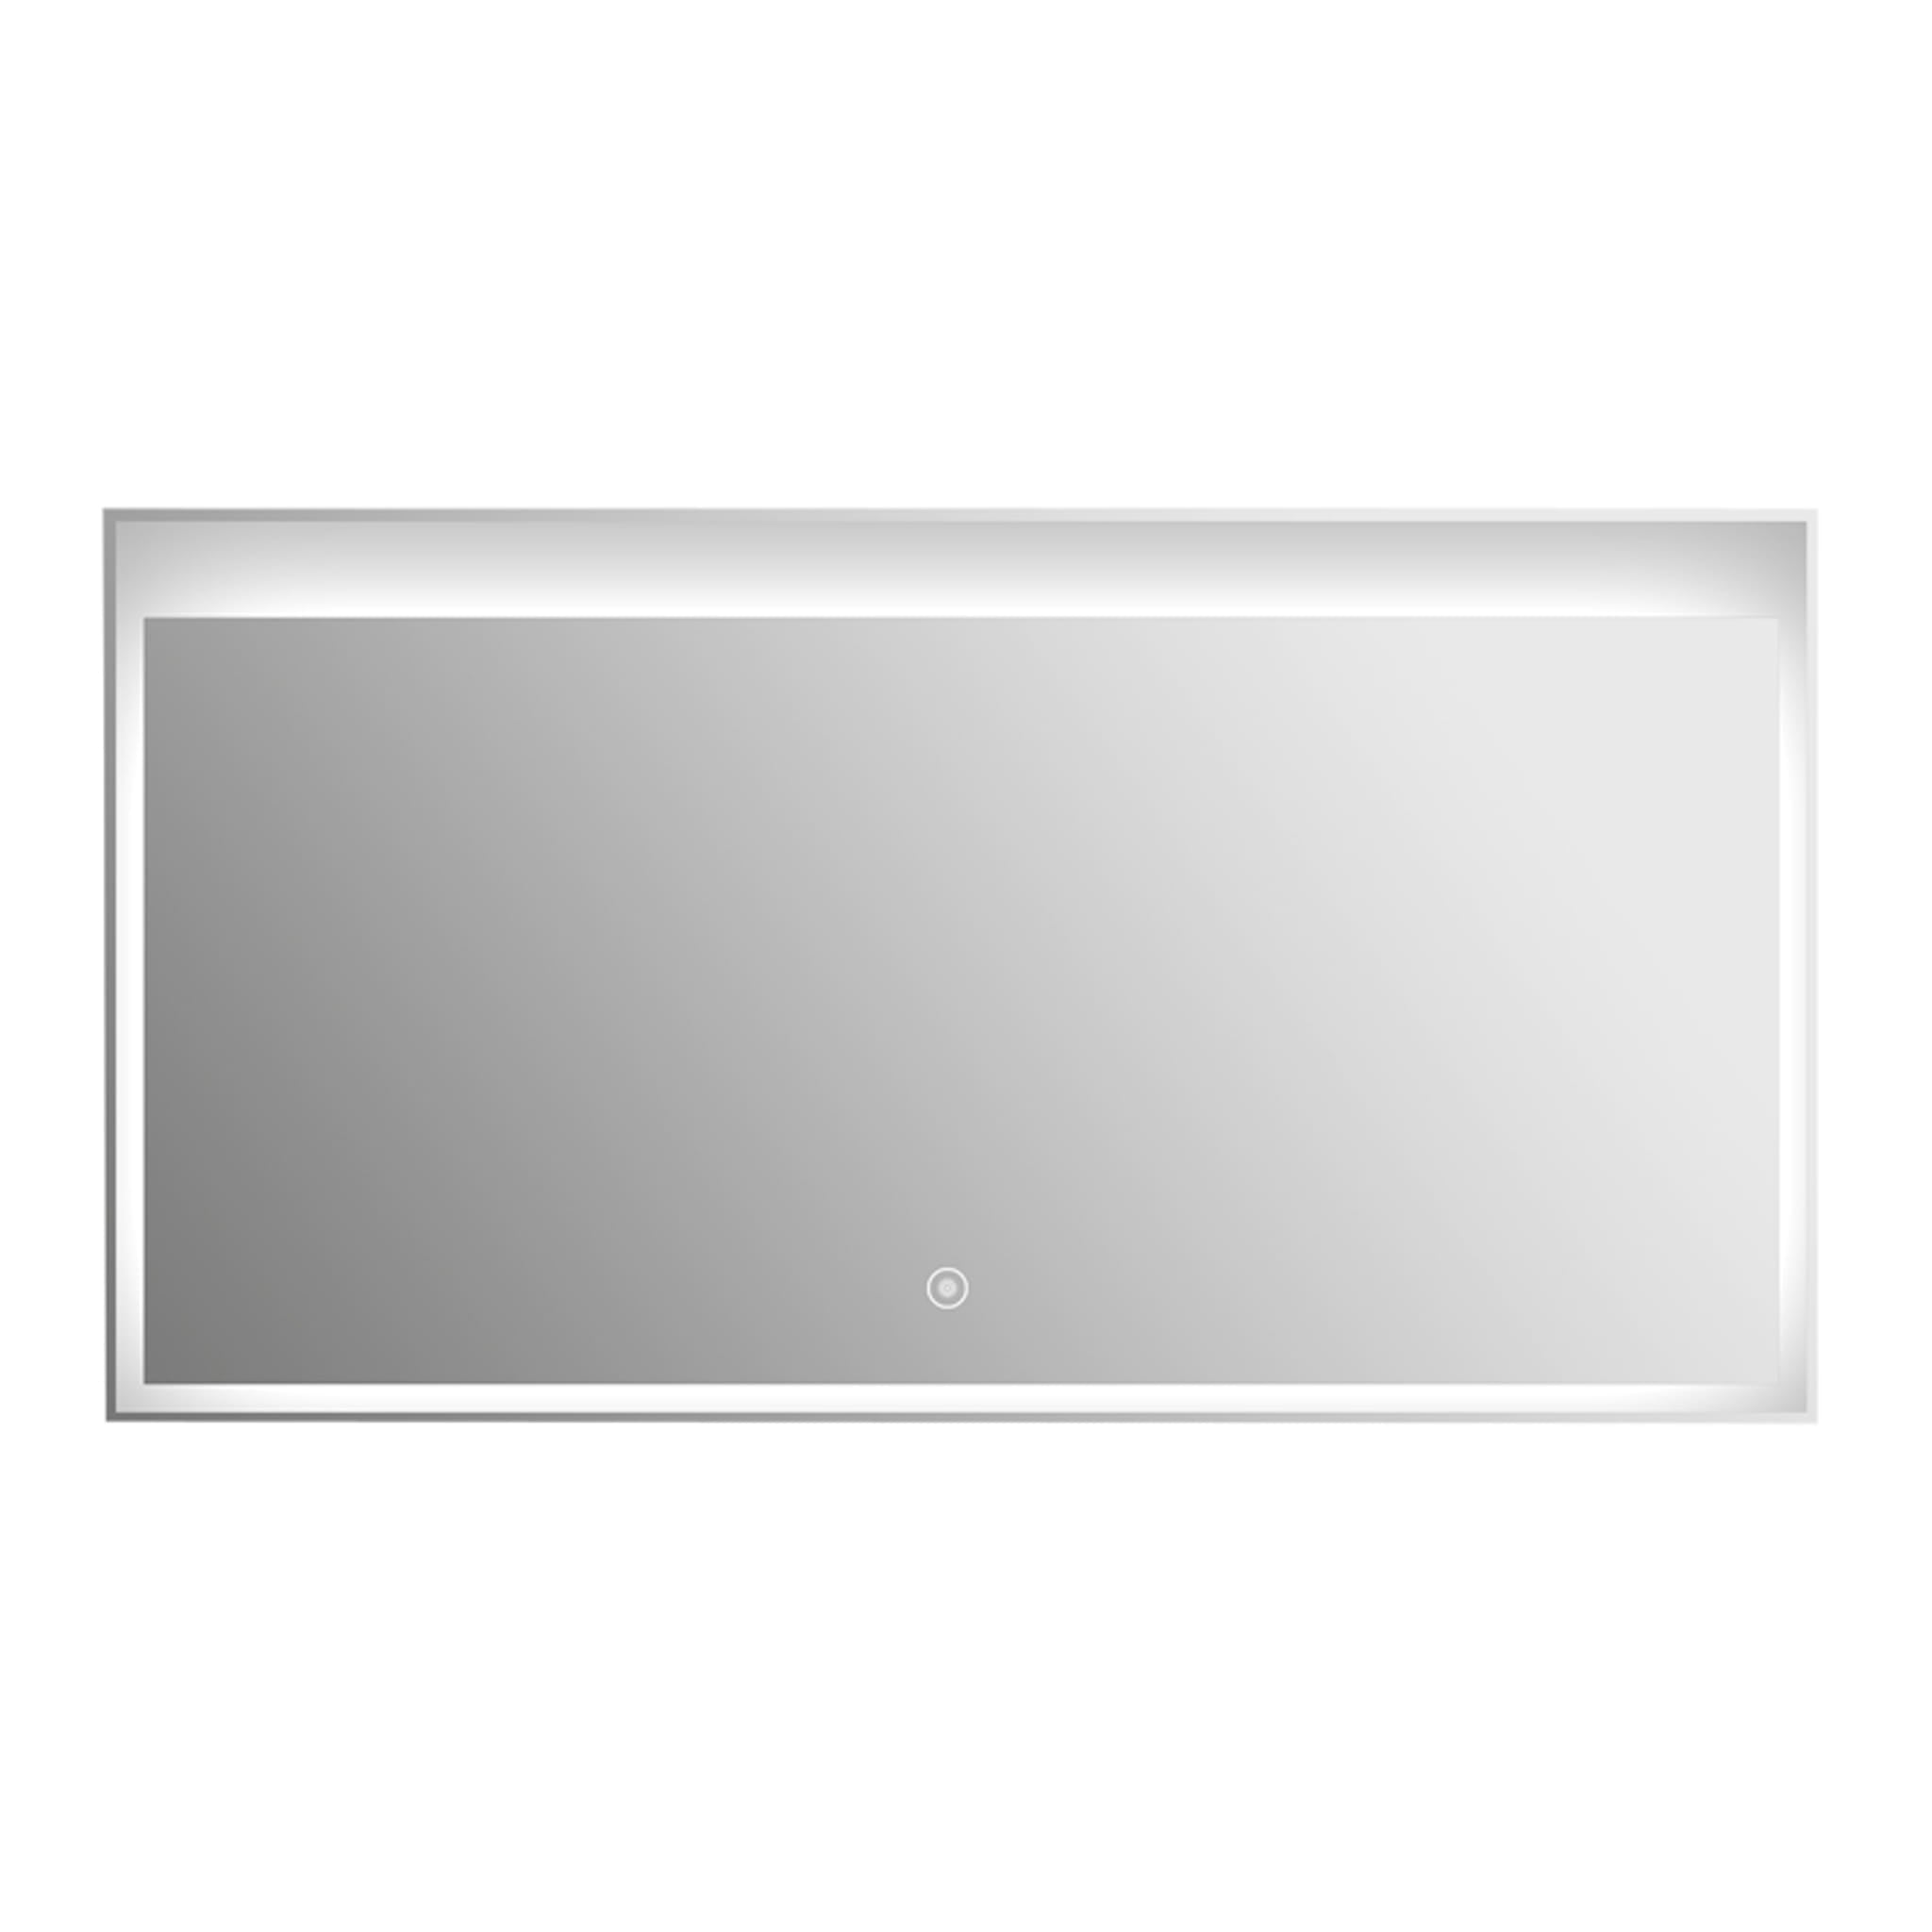 Aquamoon MM3LT1500 LED Bathroom Mirror 60" x 24" Wall Mounted Side Switch 6000K High Lumen